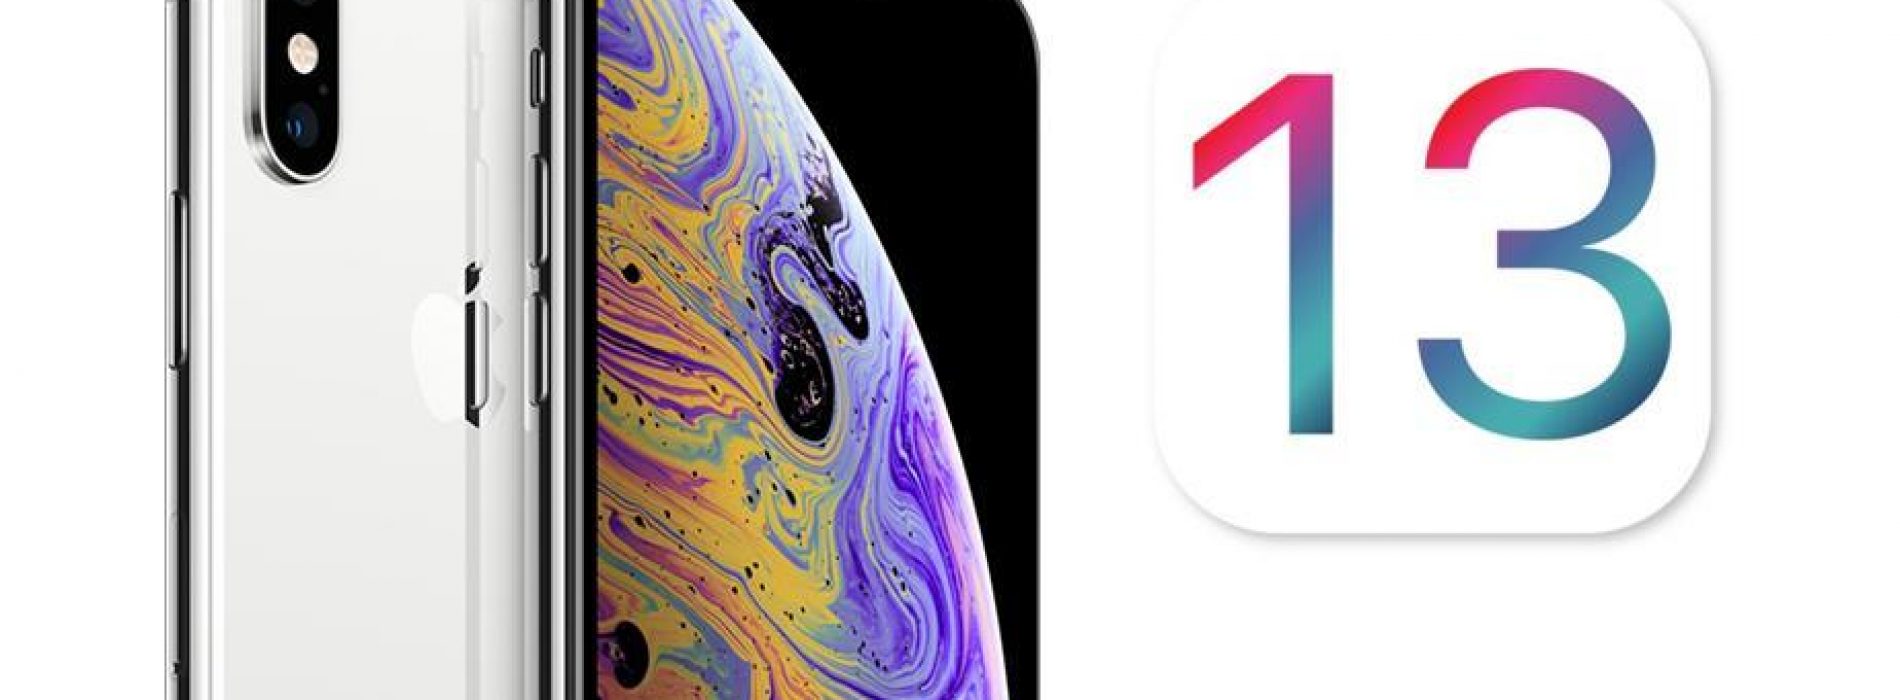 Novedades del nuevo iOS 13 de Apple